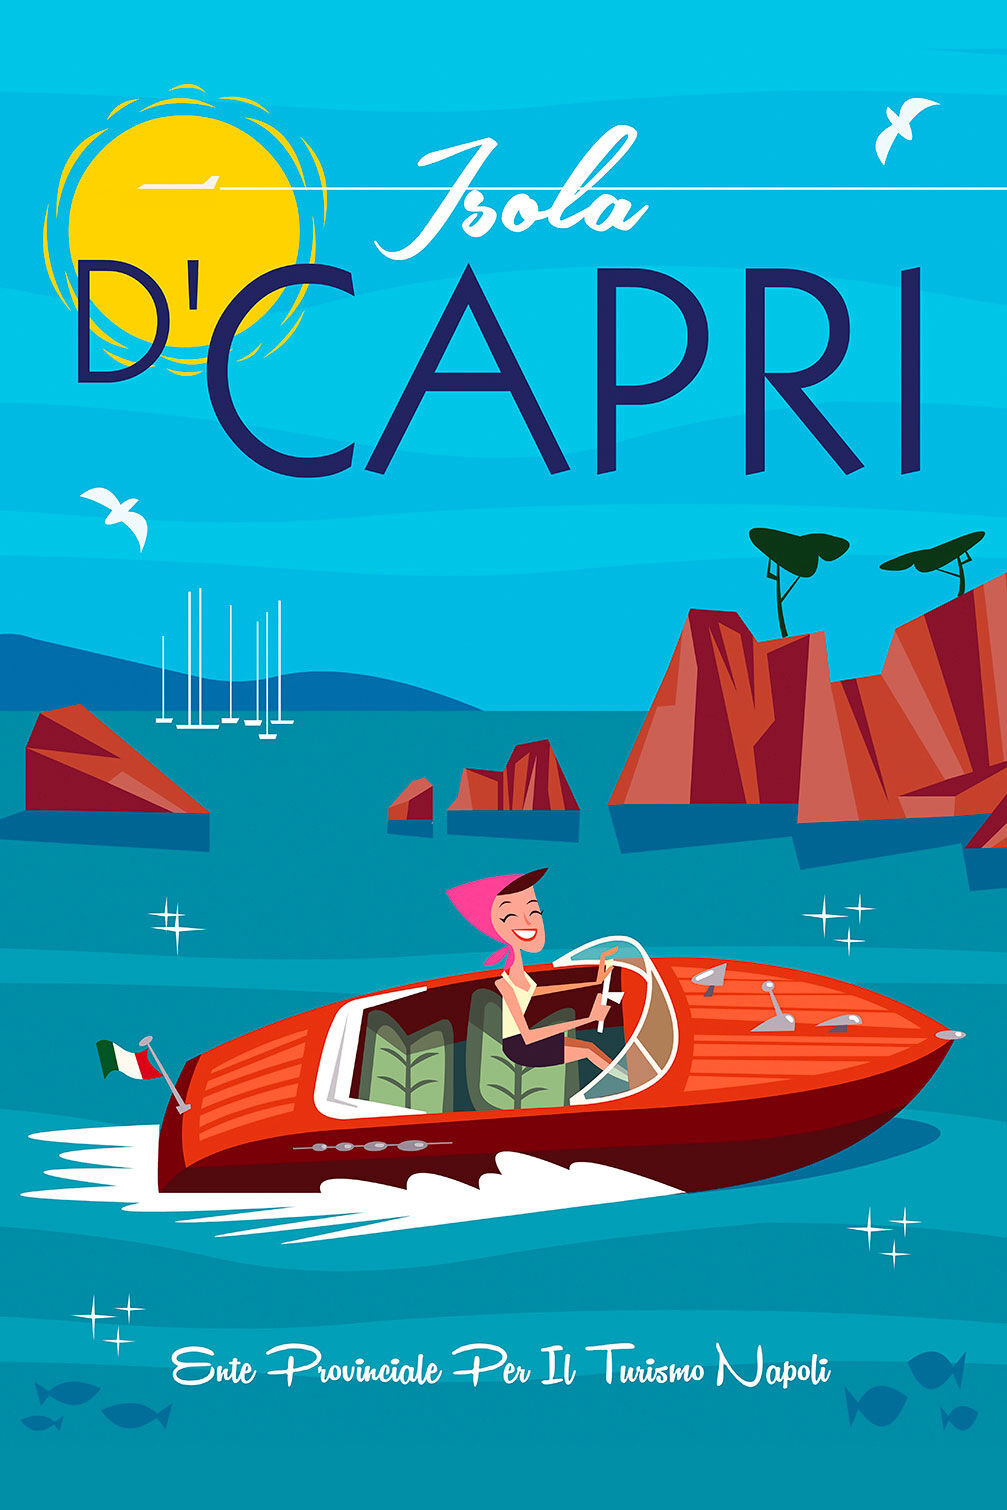 Hexoa Viaje de cuadro a capri impresión sobre lienzo 60x90cm